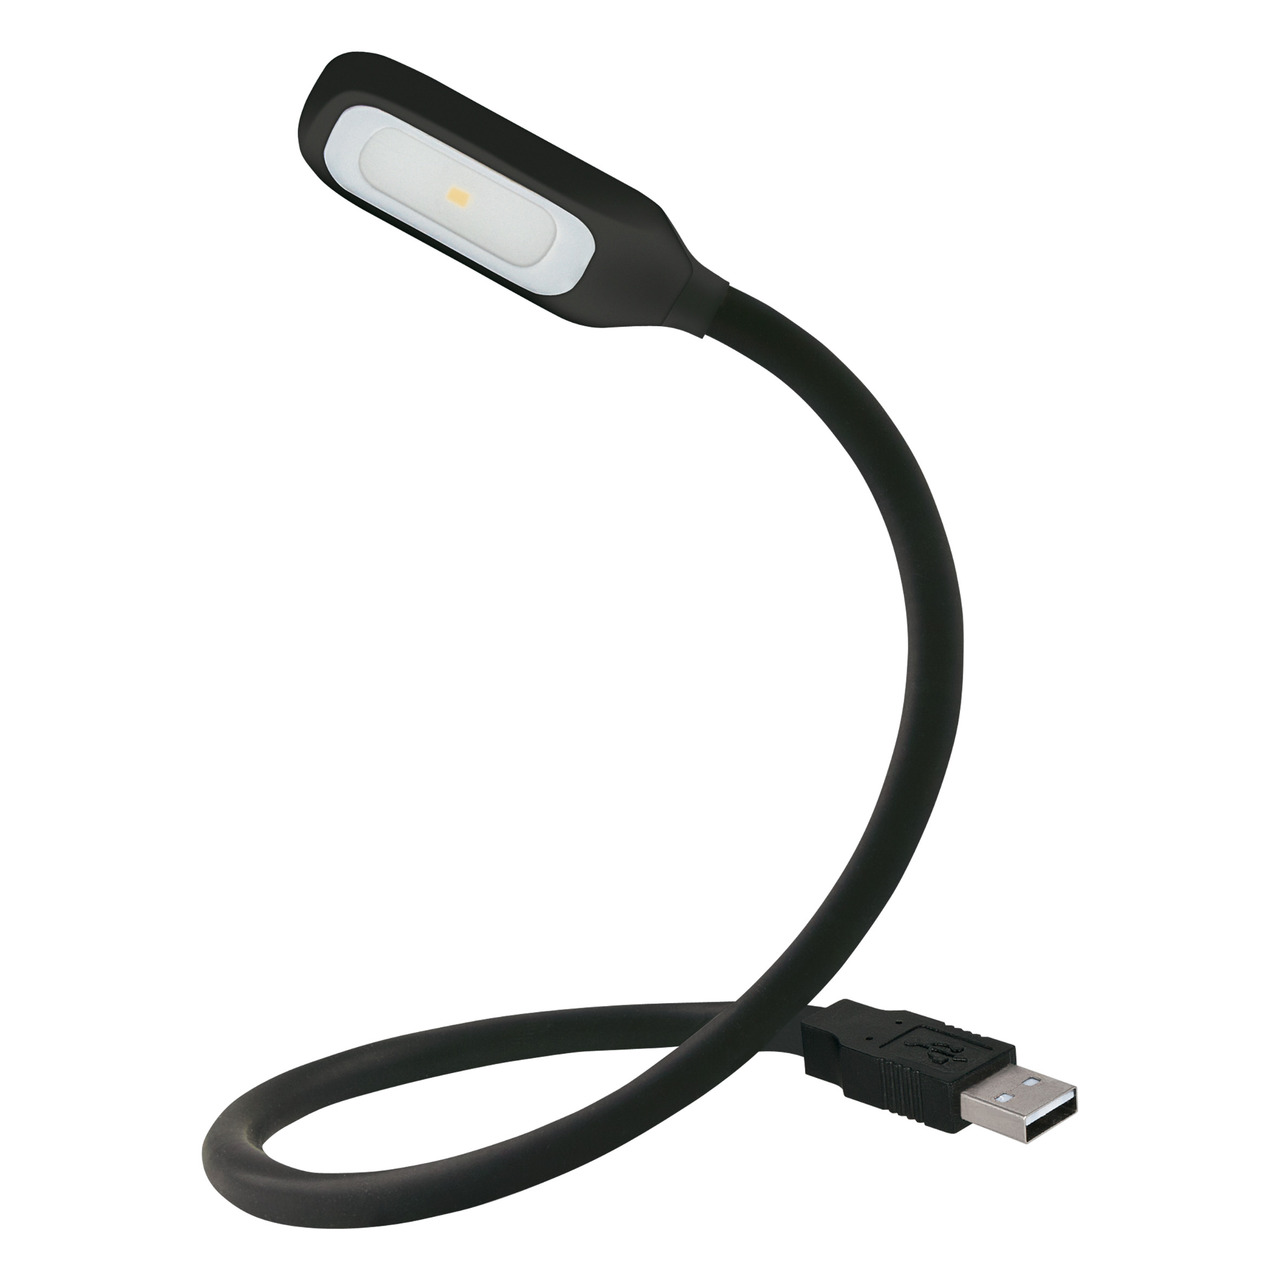 OSRAM LED-Lese- und Orientierungsleuchte ONYX USB- biegsamer Leuchtenhals- 18 lm- USB-Anschluss